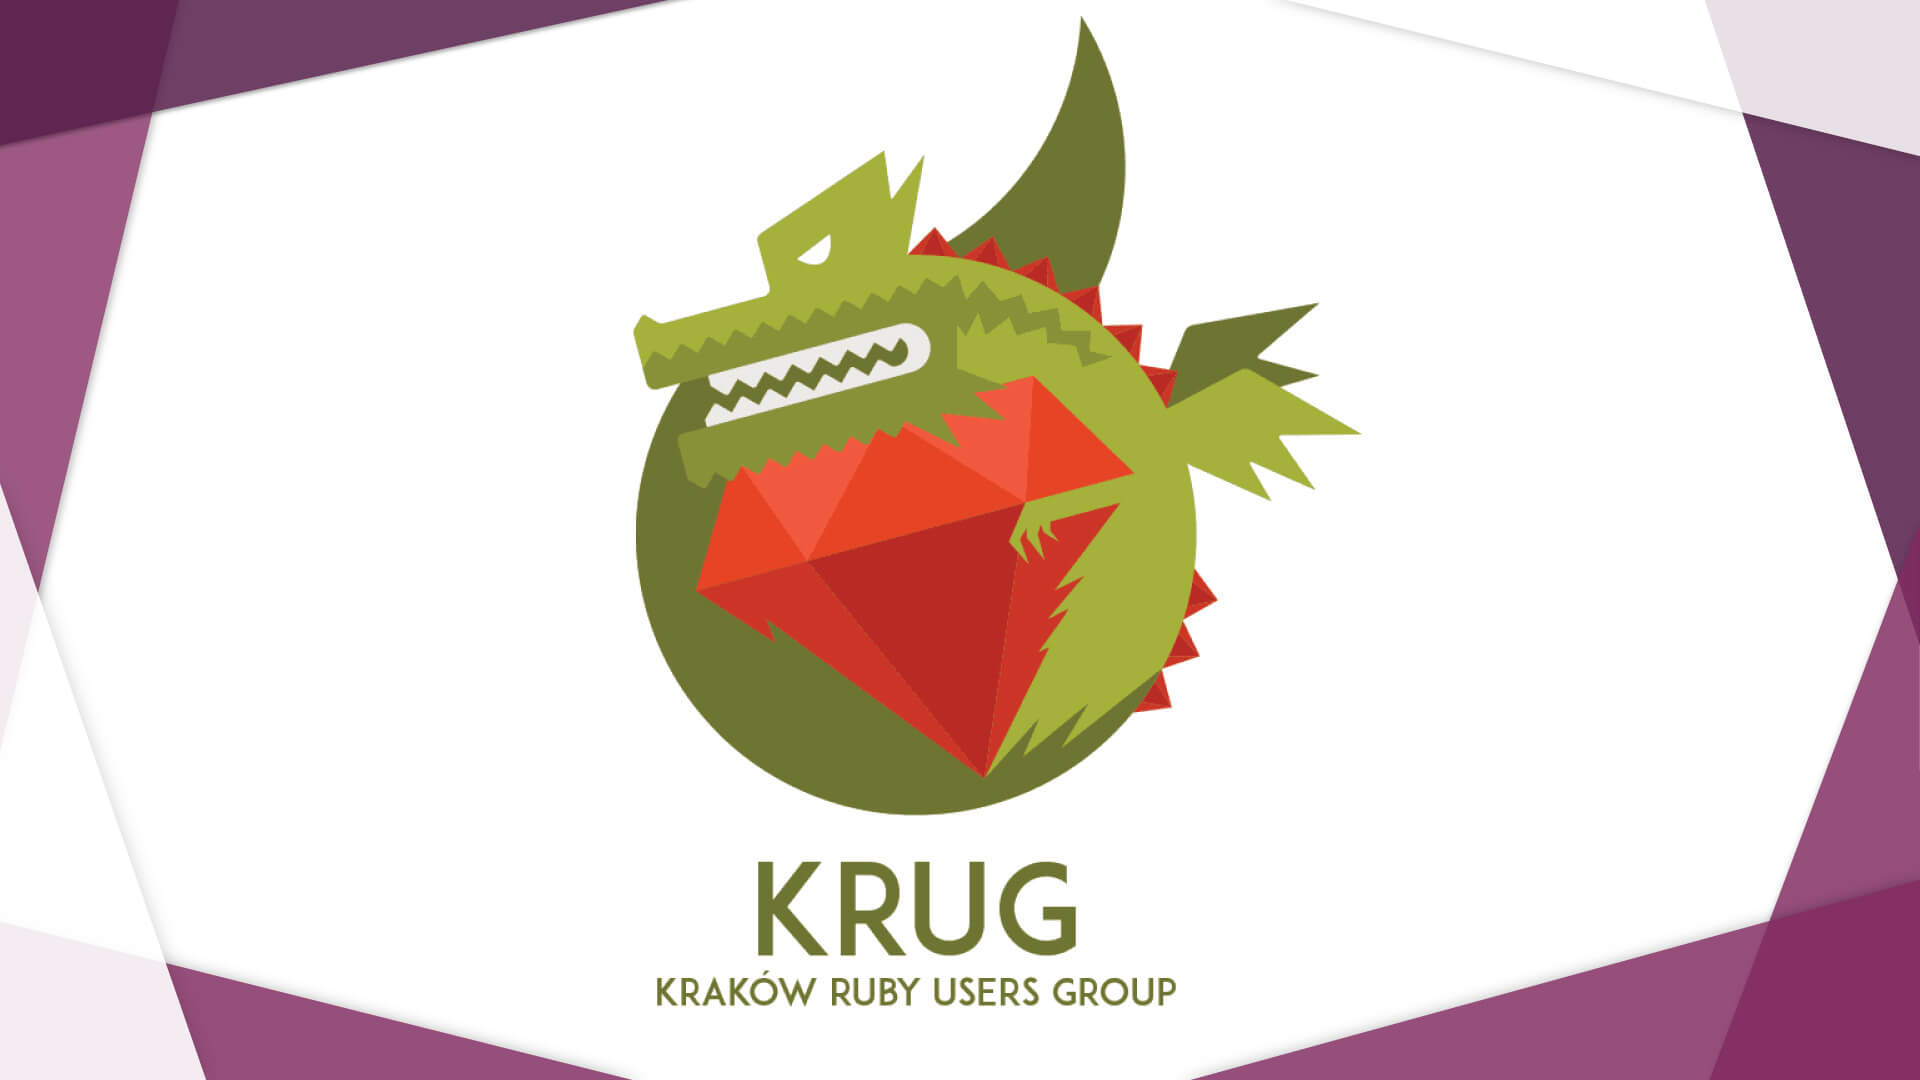 KRAKOW RUBY USER GROUP’S LOGO - Image